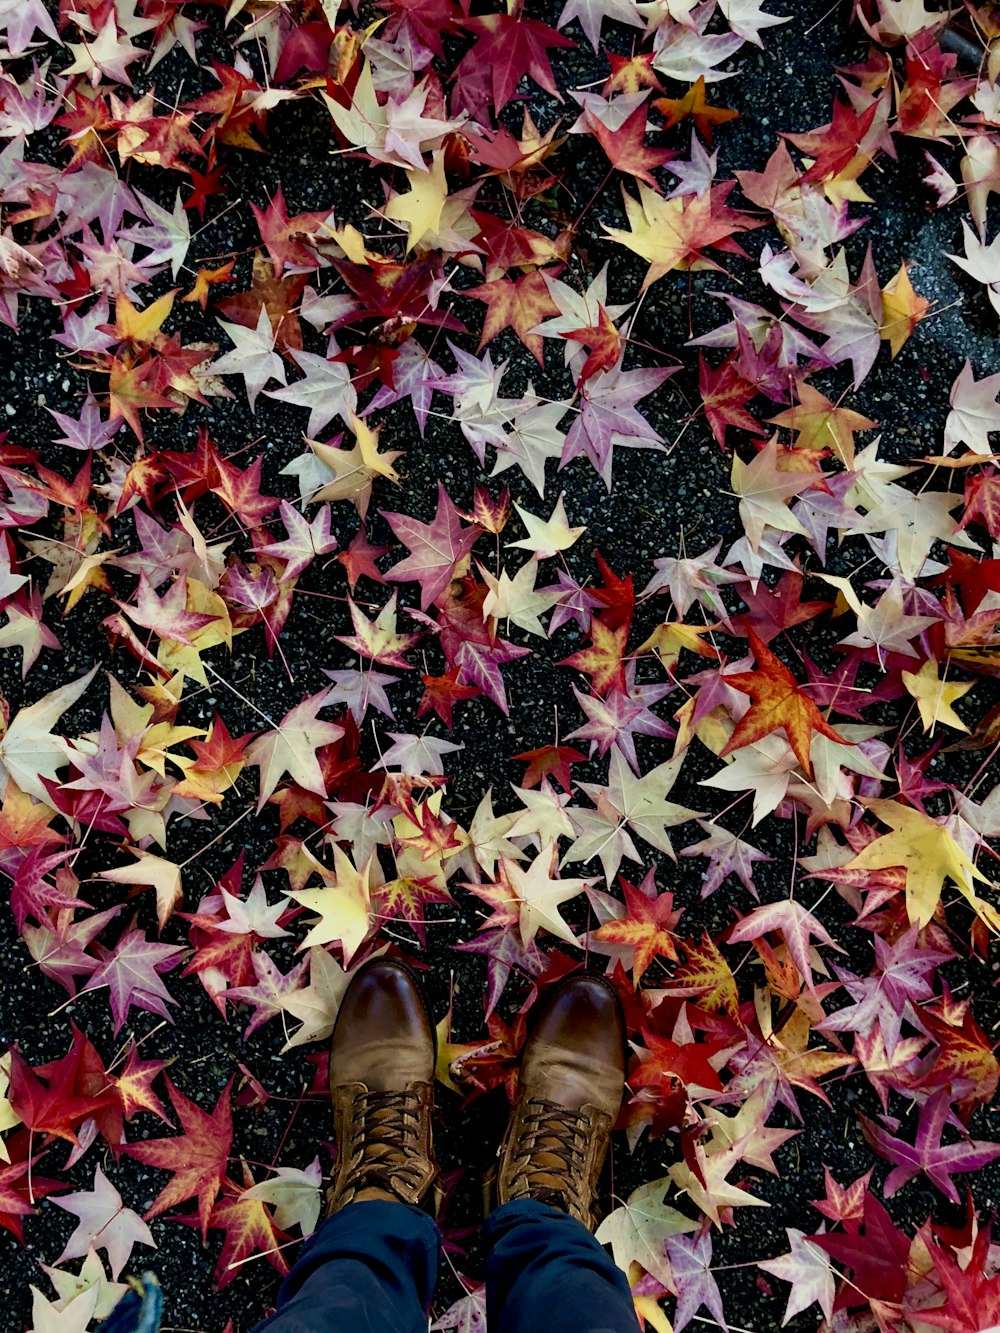 foglie d'acero di colore rosso, rosa e marrone sul pavimento di cemento